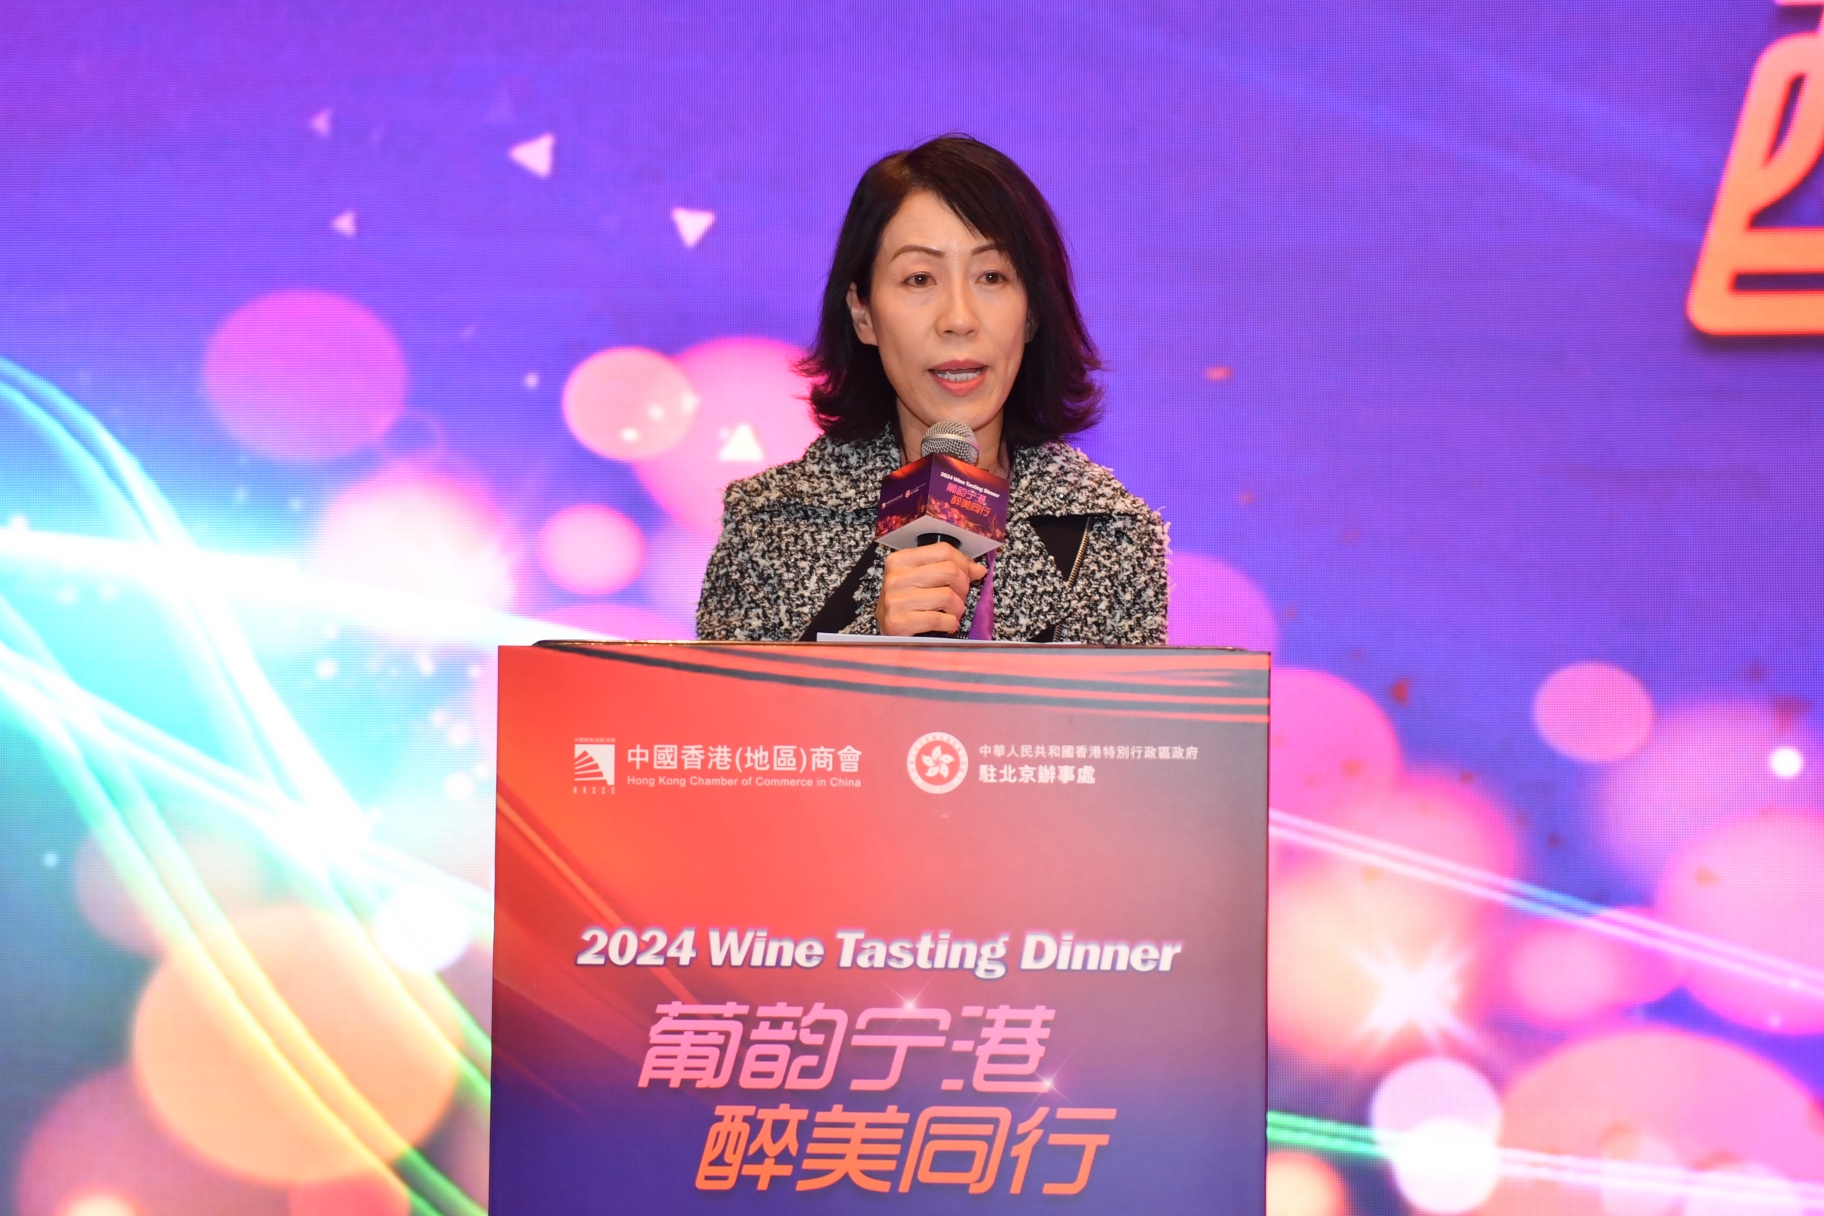 「葡韻寧港 醉美同行」寧夏葡萄酒品鑒會在京舉辦 以酒為媒促成多元合作商機